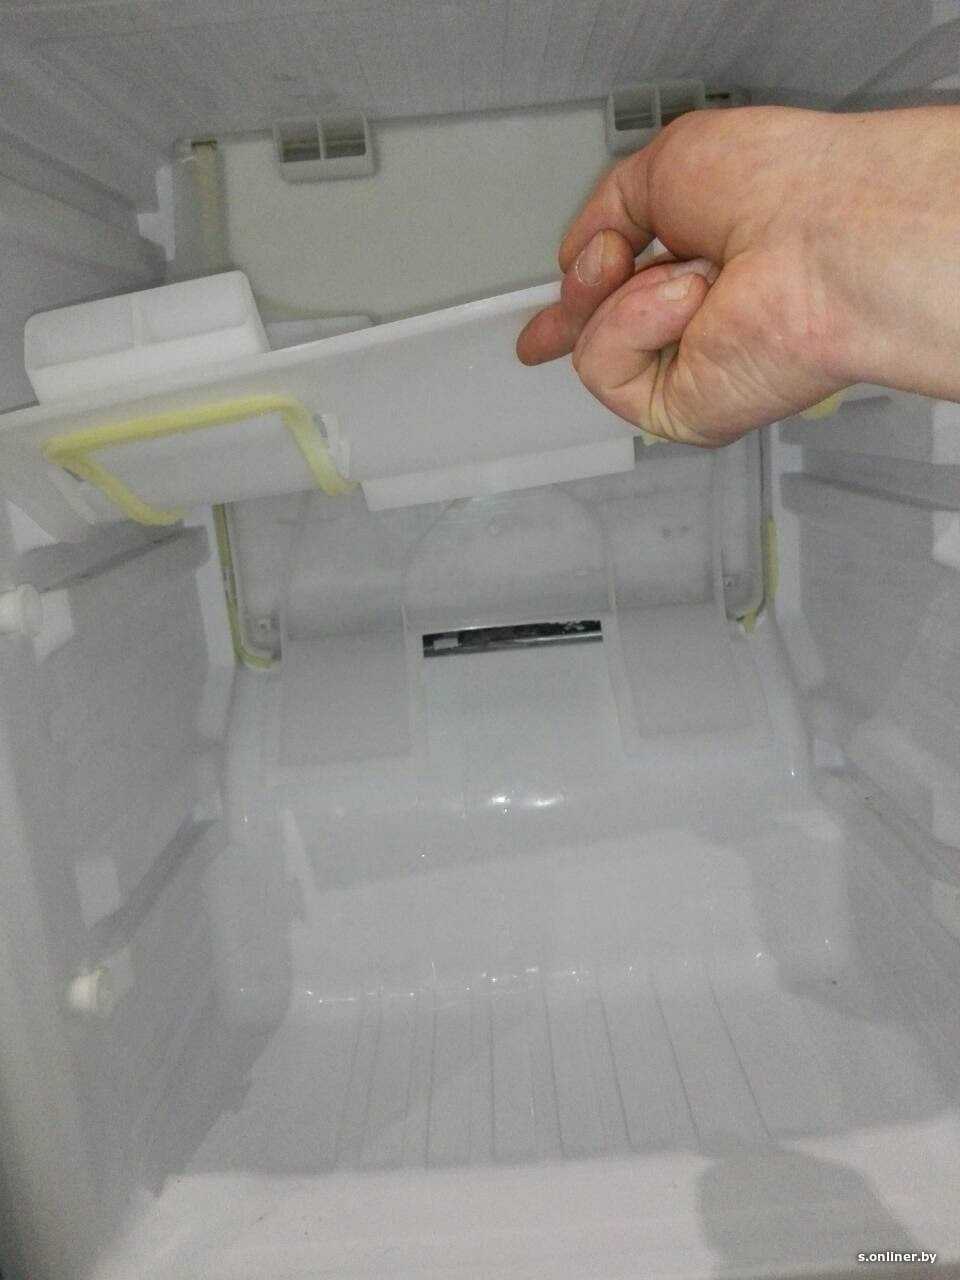 в холодильнике скапливается вода на полках